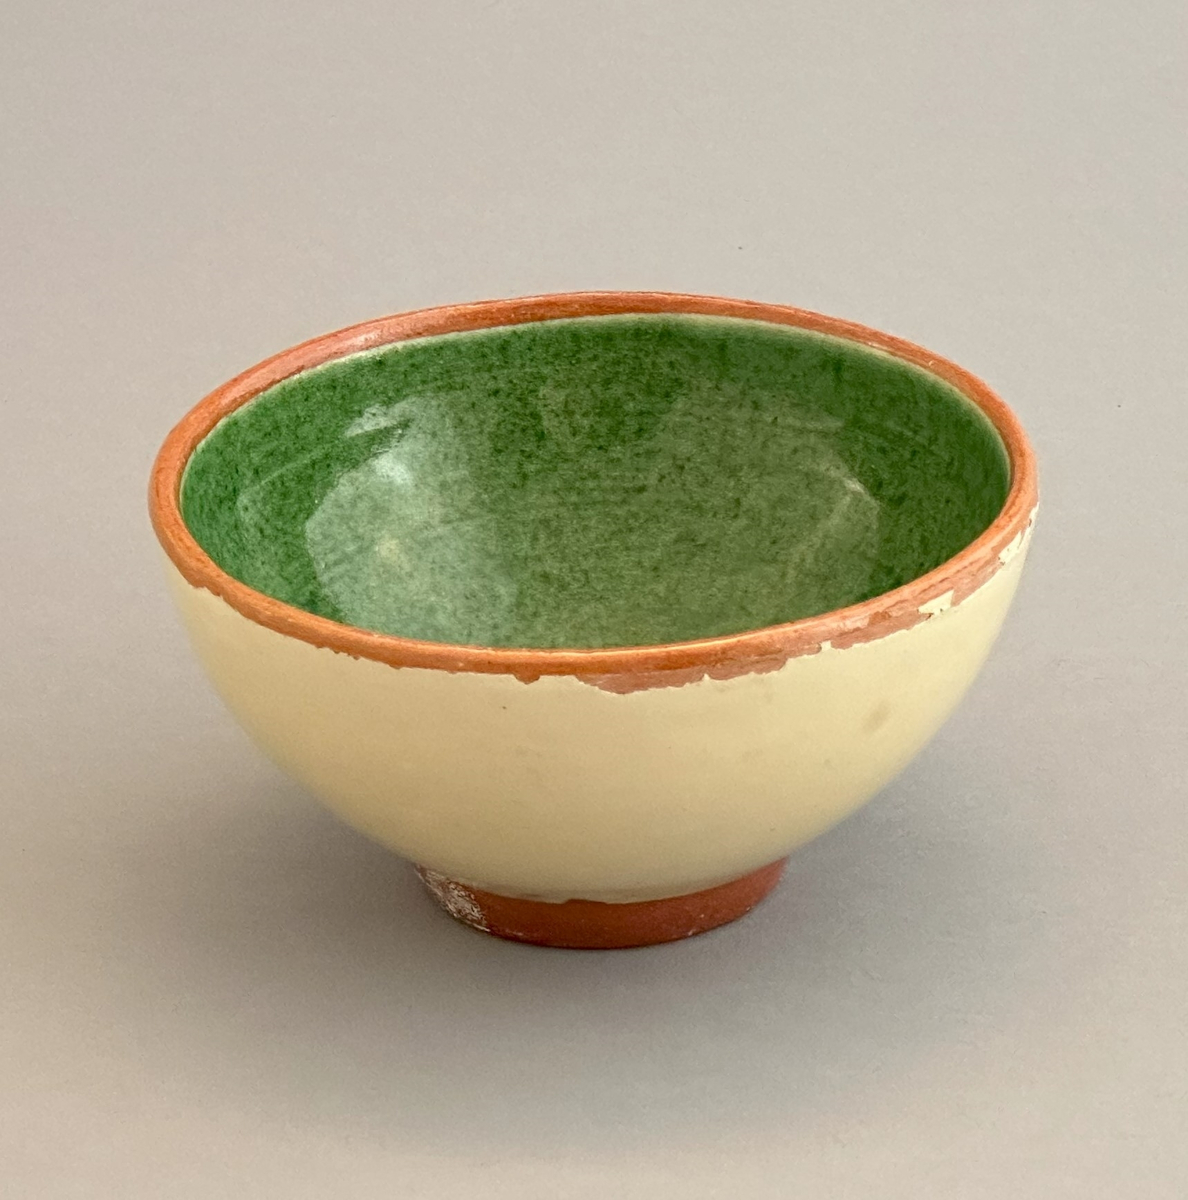 Gul skål av lergods med grön insida samt rödbrun kant och bas.